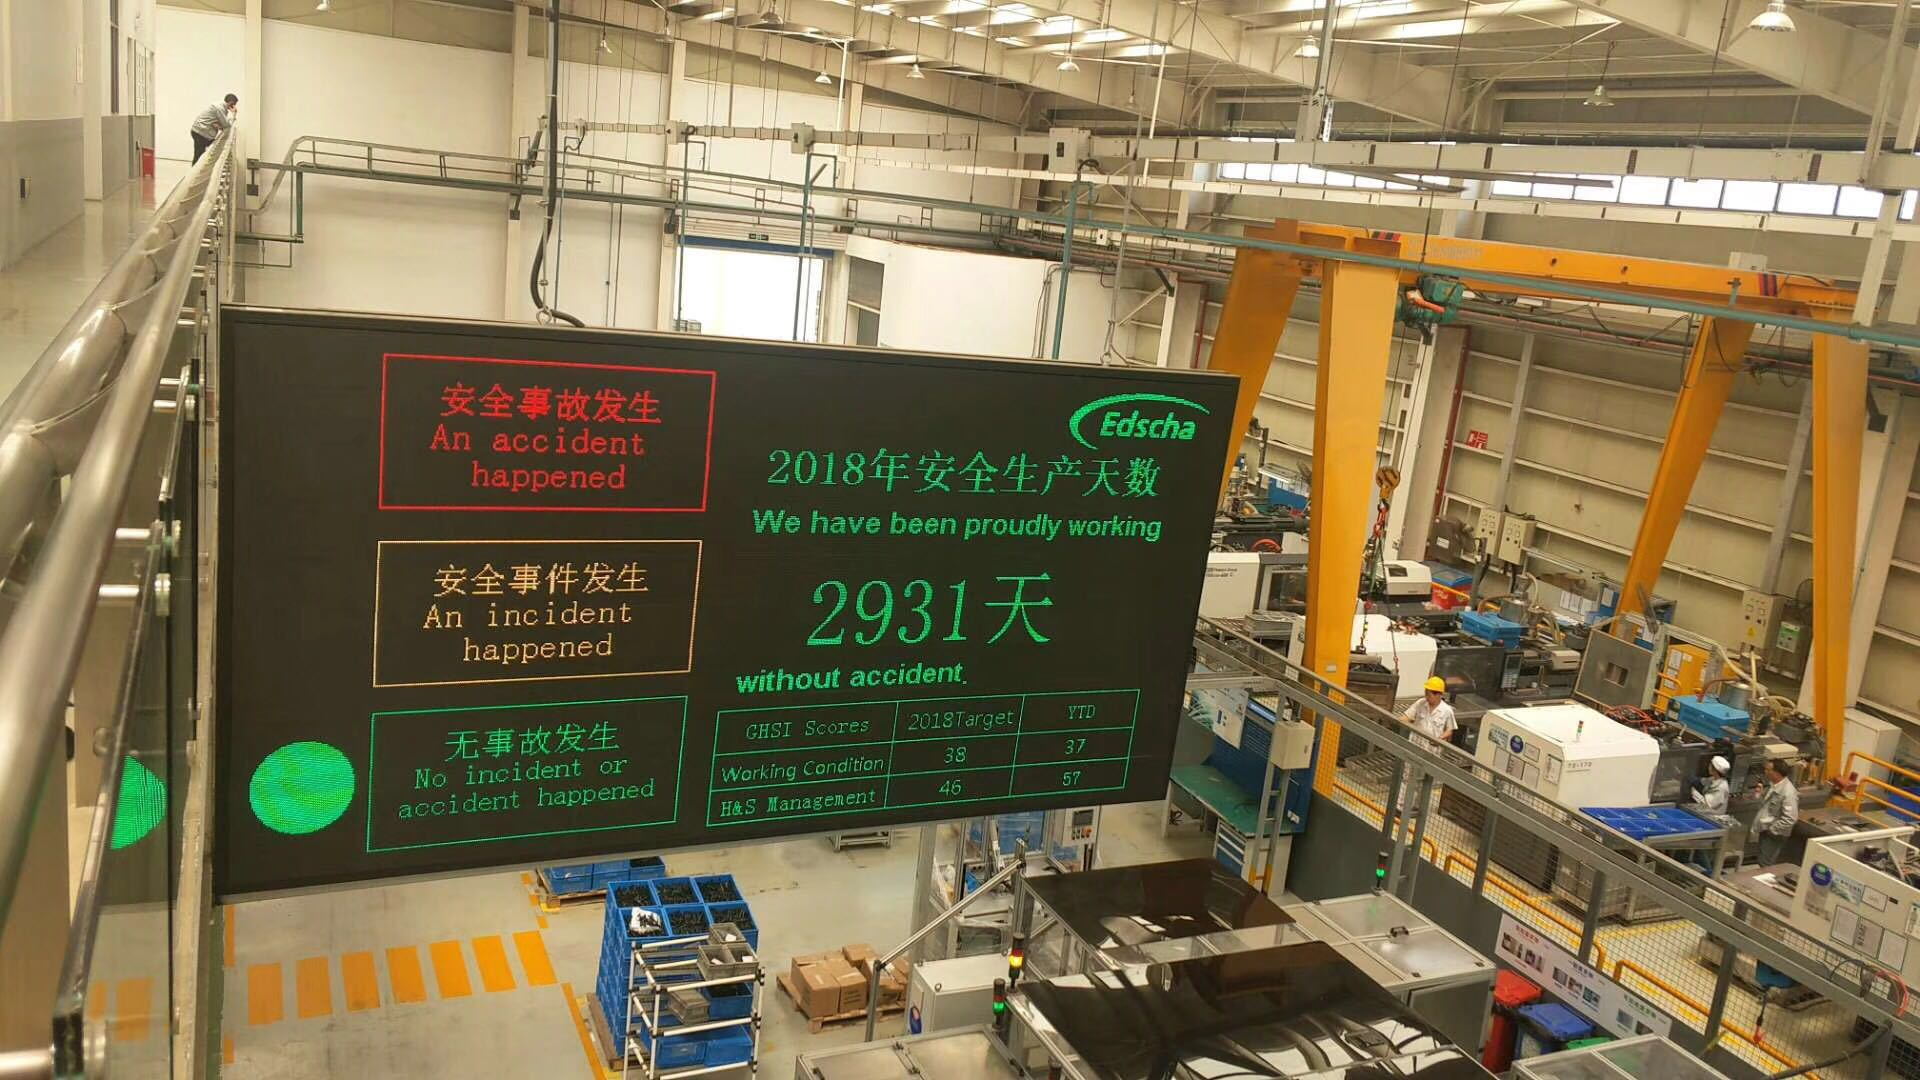 上海爱德夏机械有限公司安全生产天数电子看板